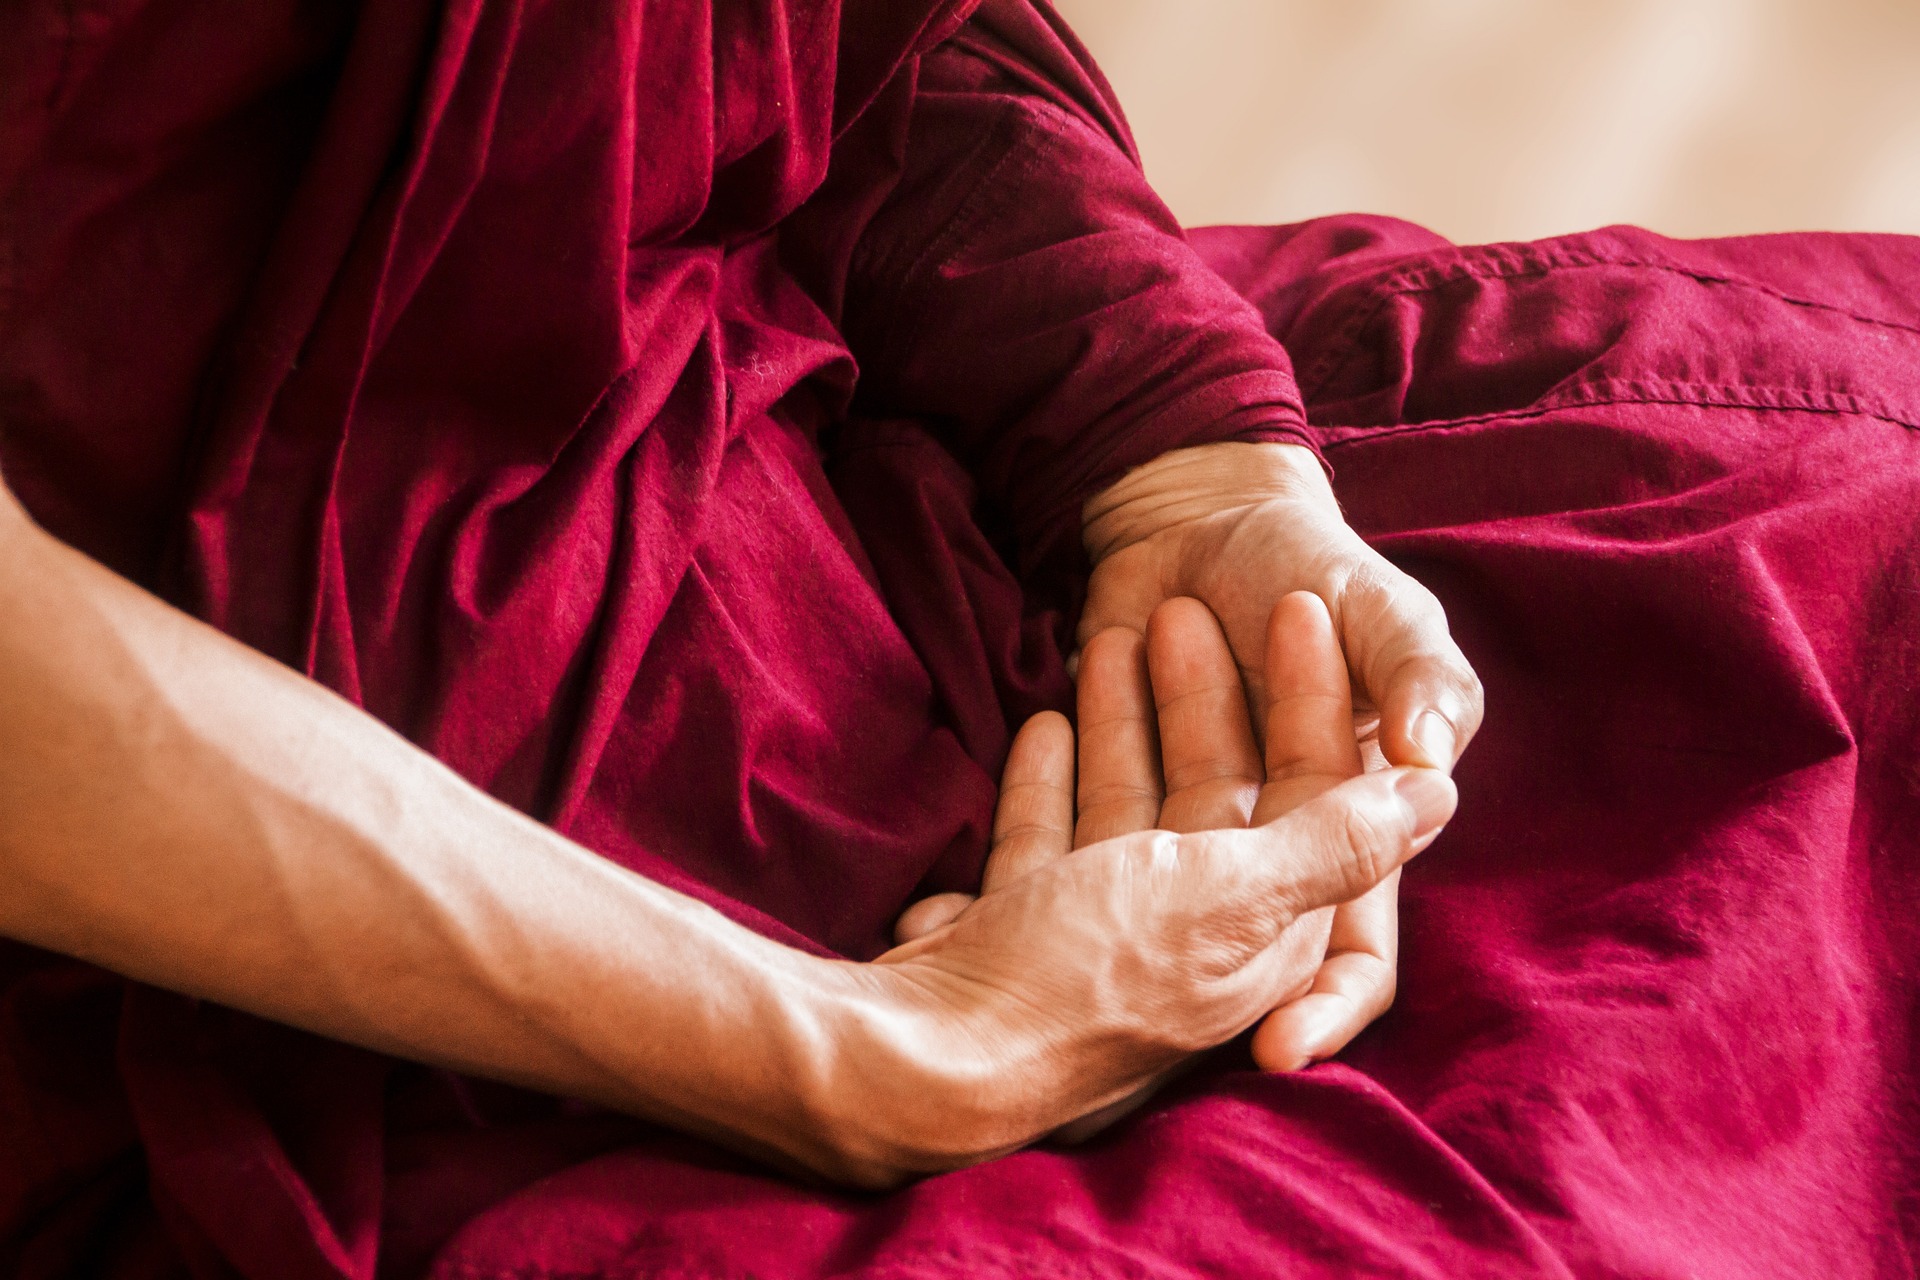 Selles meditatsiooni ja mõtluslaagris tutvustame, selgitame lahti ning praktiseerime kõige fundametaalsemaid harjutusi Tiibeti vaimsete praktikate arsenalist. N